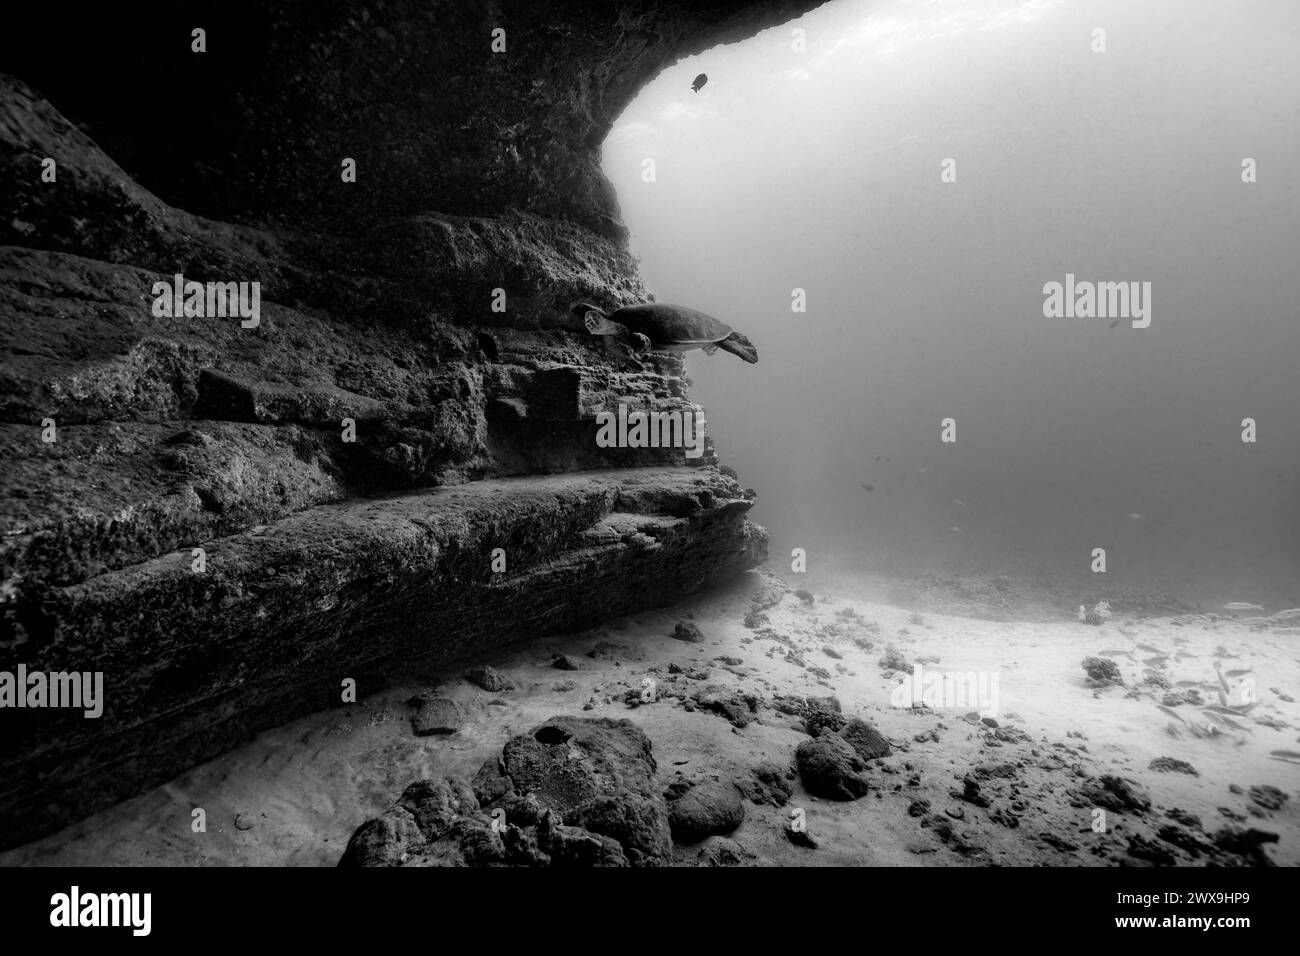 Eine pazifische grüne Meeresschildkröte tritt in einen Unterwasserhöhleneingang ein und zeigt die schattige Struktur der Höhlenwand und des Sandbodens. In Schwarzweiß. Stockfoto